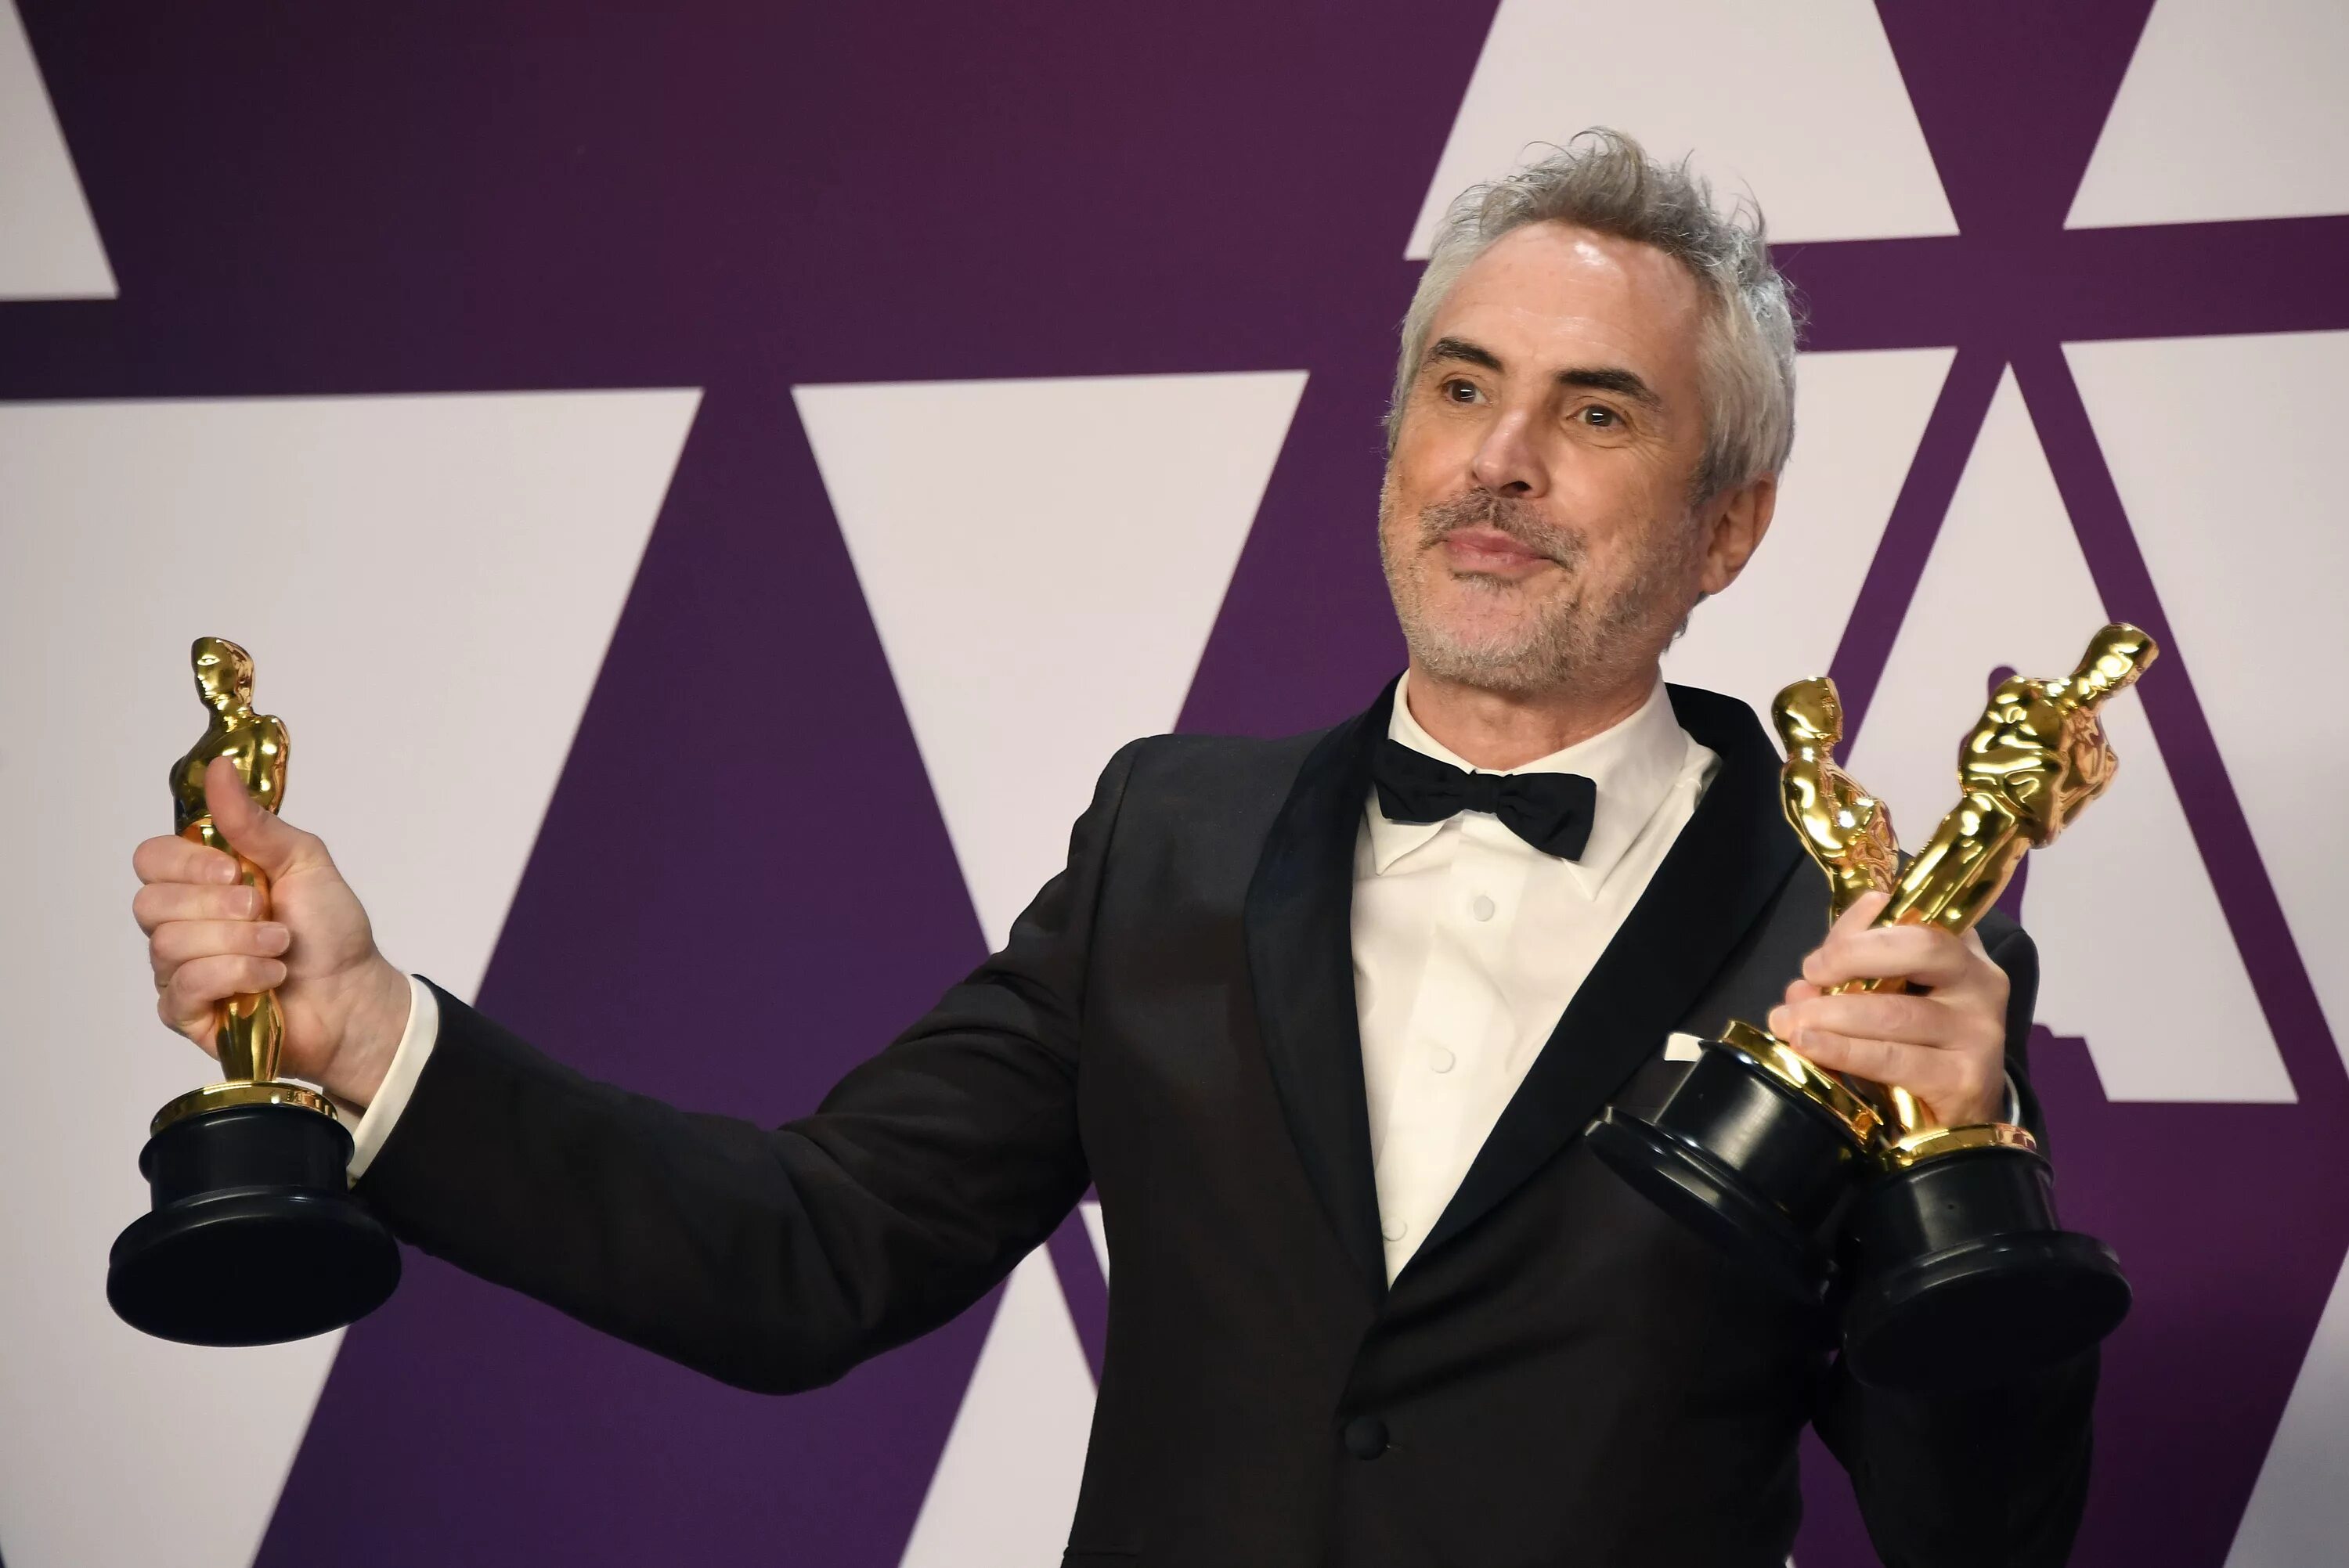 Награда 2019. Альфонсо Куарон. Альфонсо Куарон награды. Оскар (кинопремия, 2019).